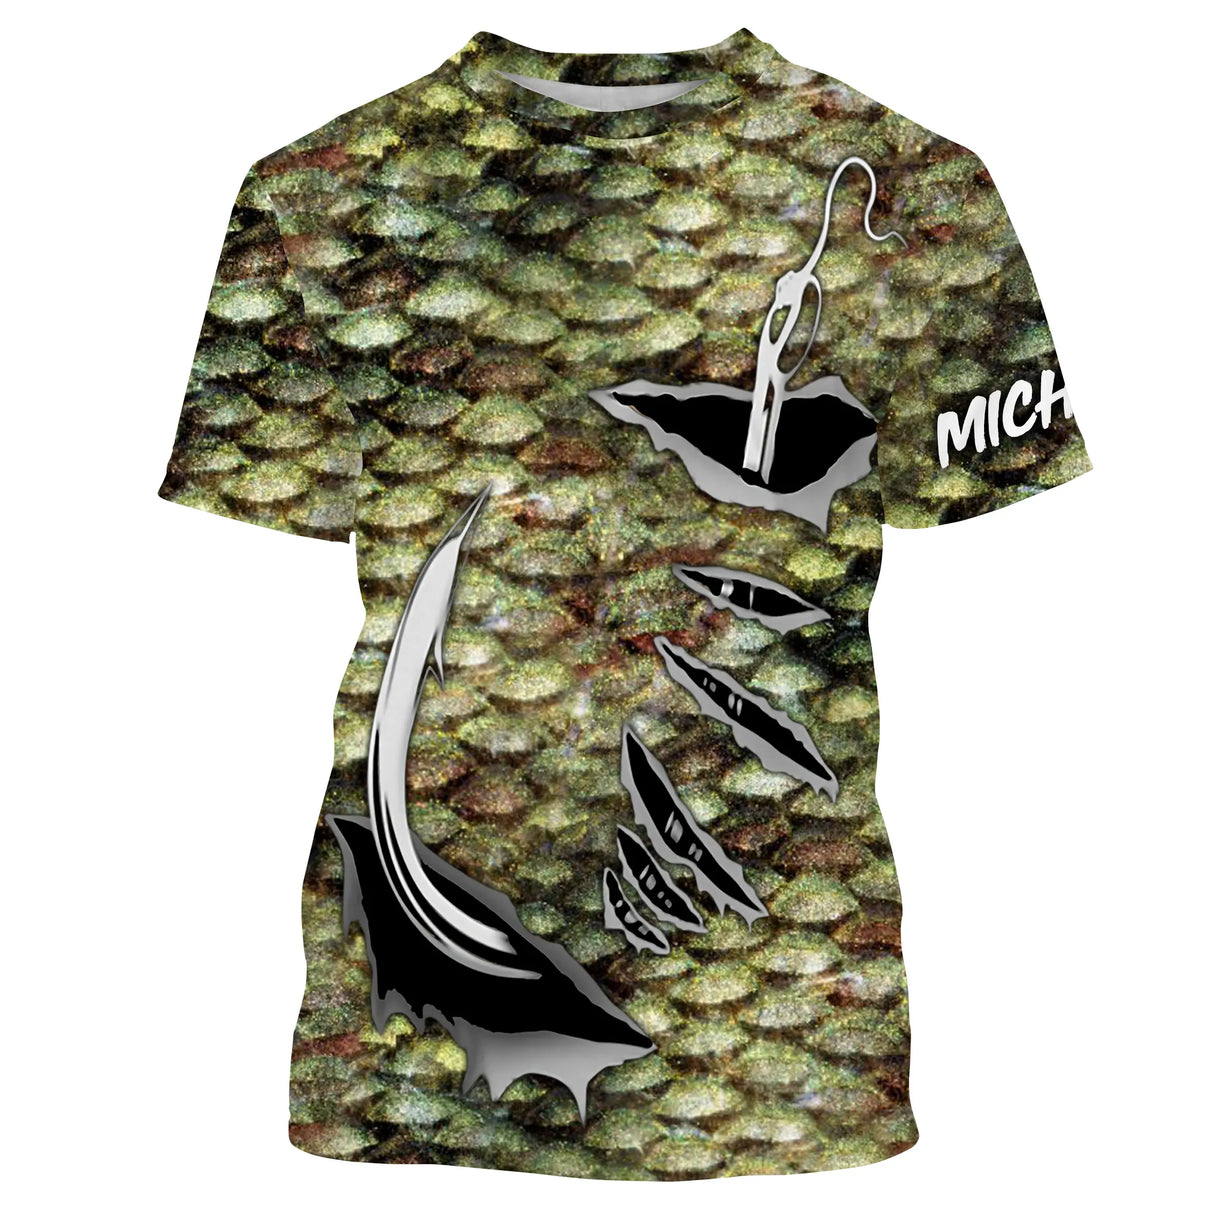 T-shirt personalizzata, bilancia, ami da pesca, regalo originale per pescatori - CT28072213